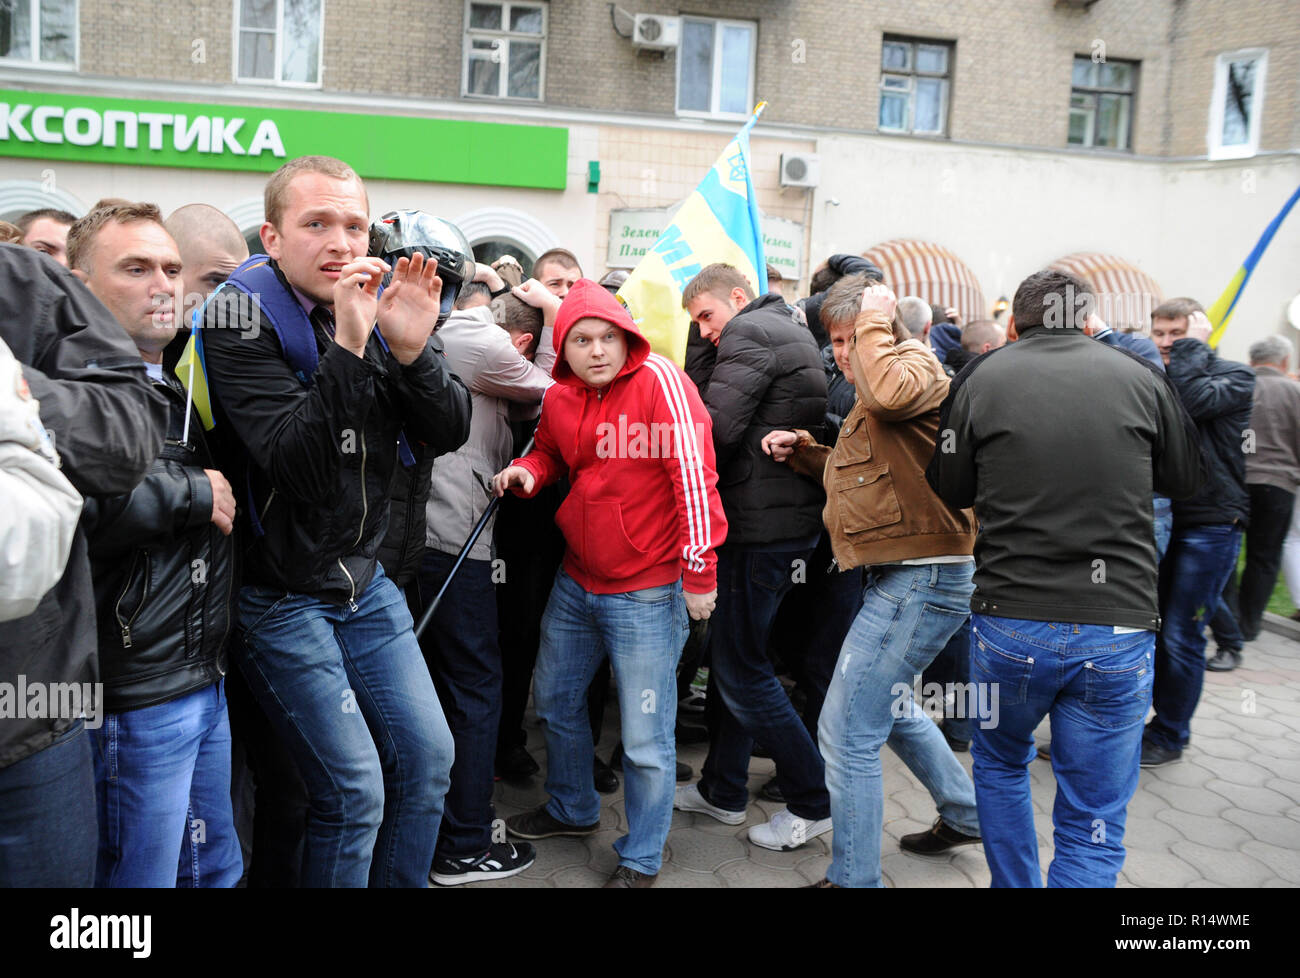 April 28, 2014 - Donezk, Ukraine: Ukrainer, die friedlich für die Bewahrung der Einheit des Landes gezeigt, reagieren mit Angst, als sie unter Beschuss von pro-russischen Separatisten. Die pro-russische separatistische Gruppe, meist Jugendliche in Balaclava, dann feierten ihren Aktionen durch schreien Sie hatten zertrümmerte 'Faschisten'. Une Manifestation pacifique en faveur de l'unite de l'Ukraine Donetsk est brutalement dispersee Gleichheit des Gruppen separatistes pro-Russes armes de Schlagstöcke et, schneckaufkommen Gießen, d'armes blanches et de pistolets. Il s'agit de La Derniere vorläufige des Partisanen de l'unite Stockfoto